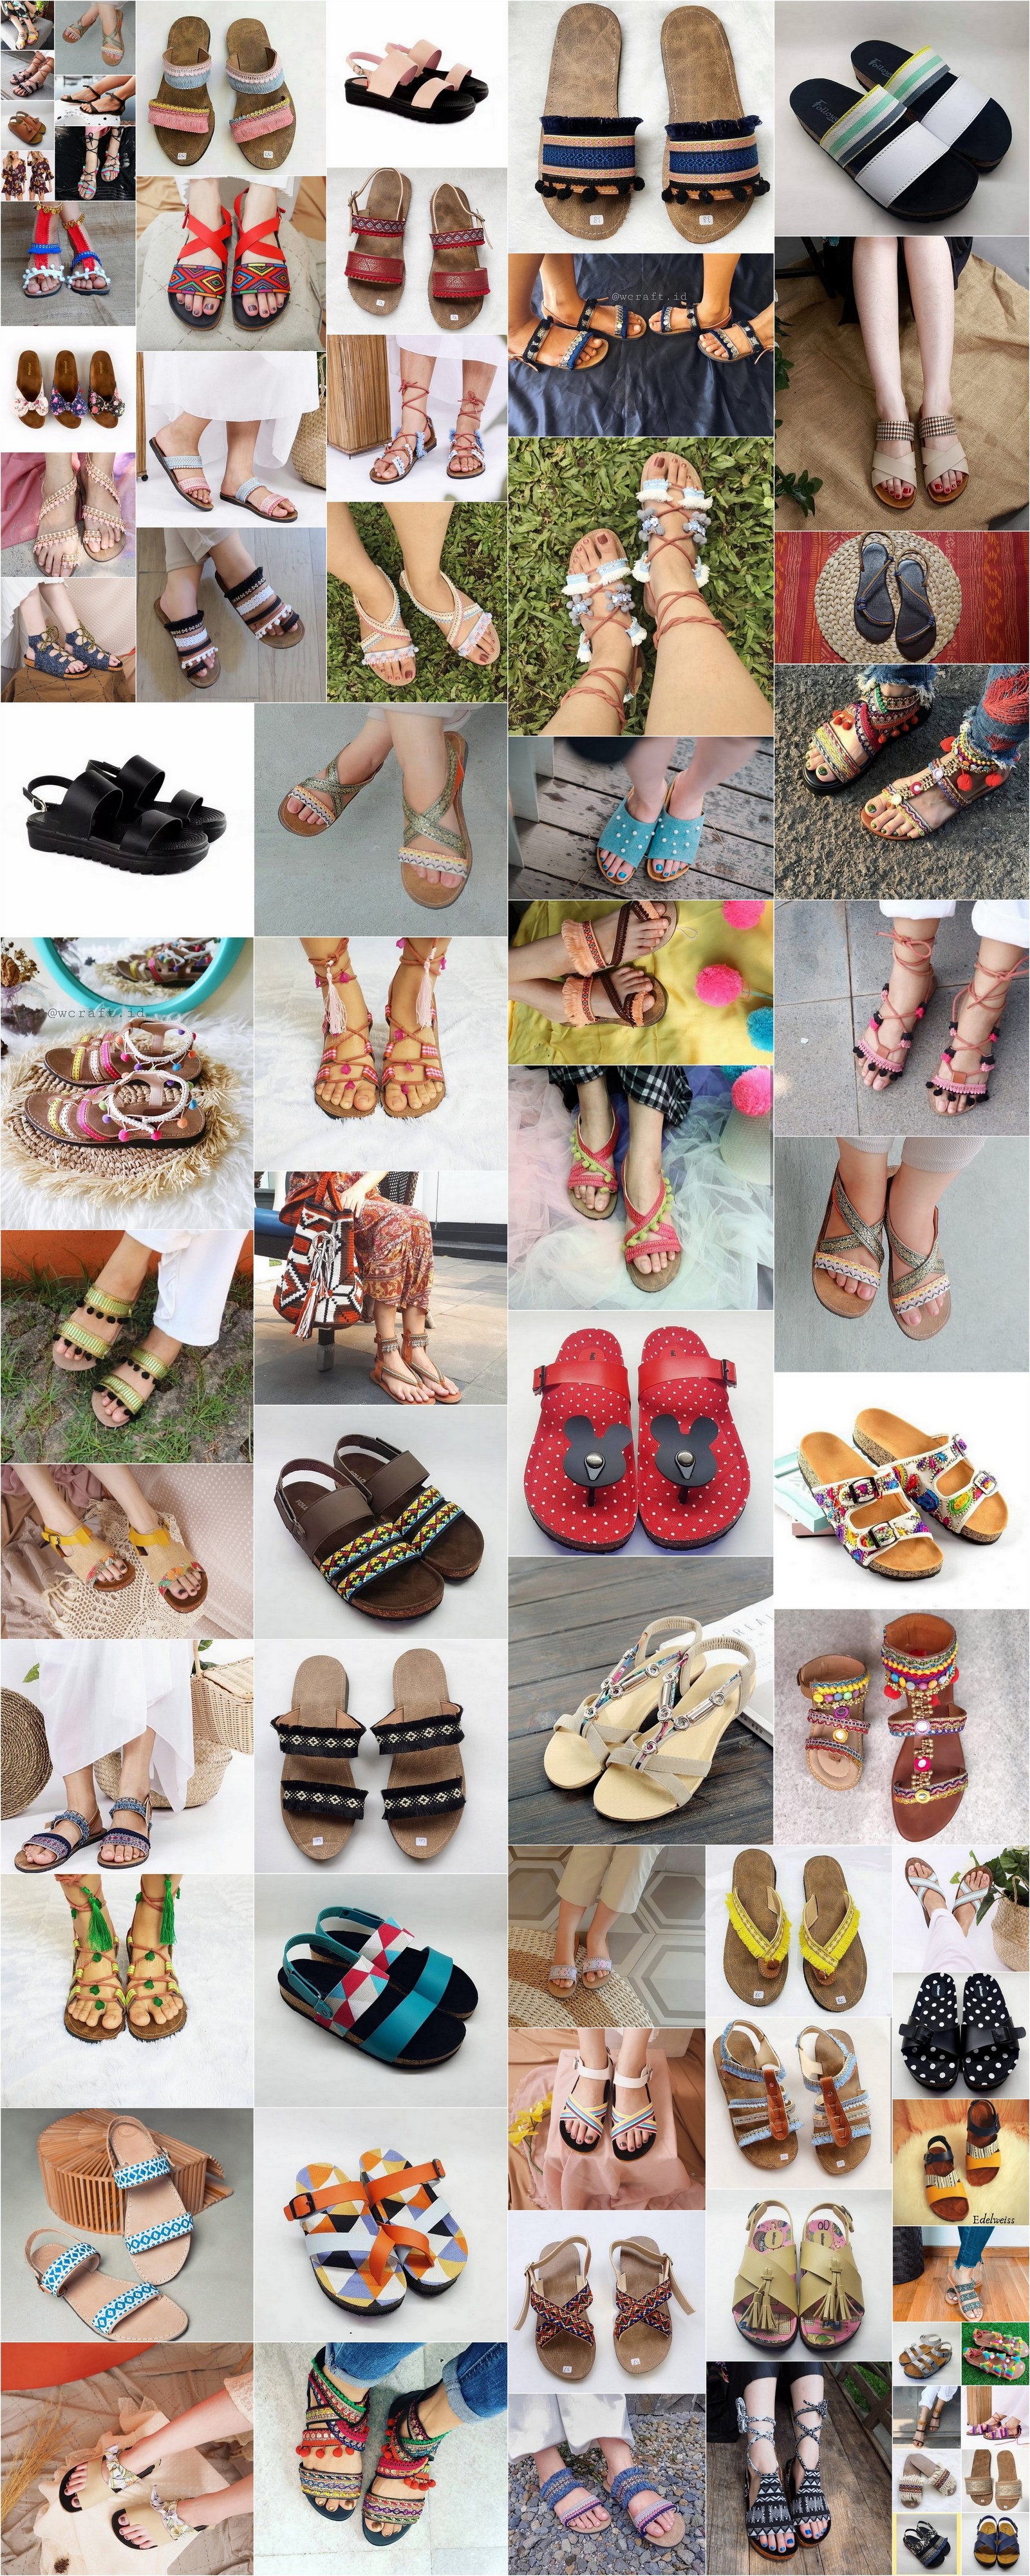 sandals for bohemian attire